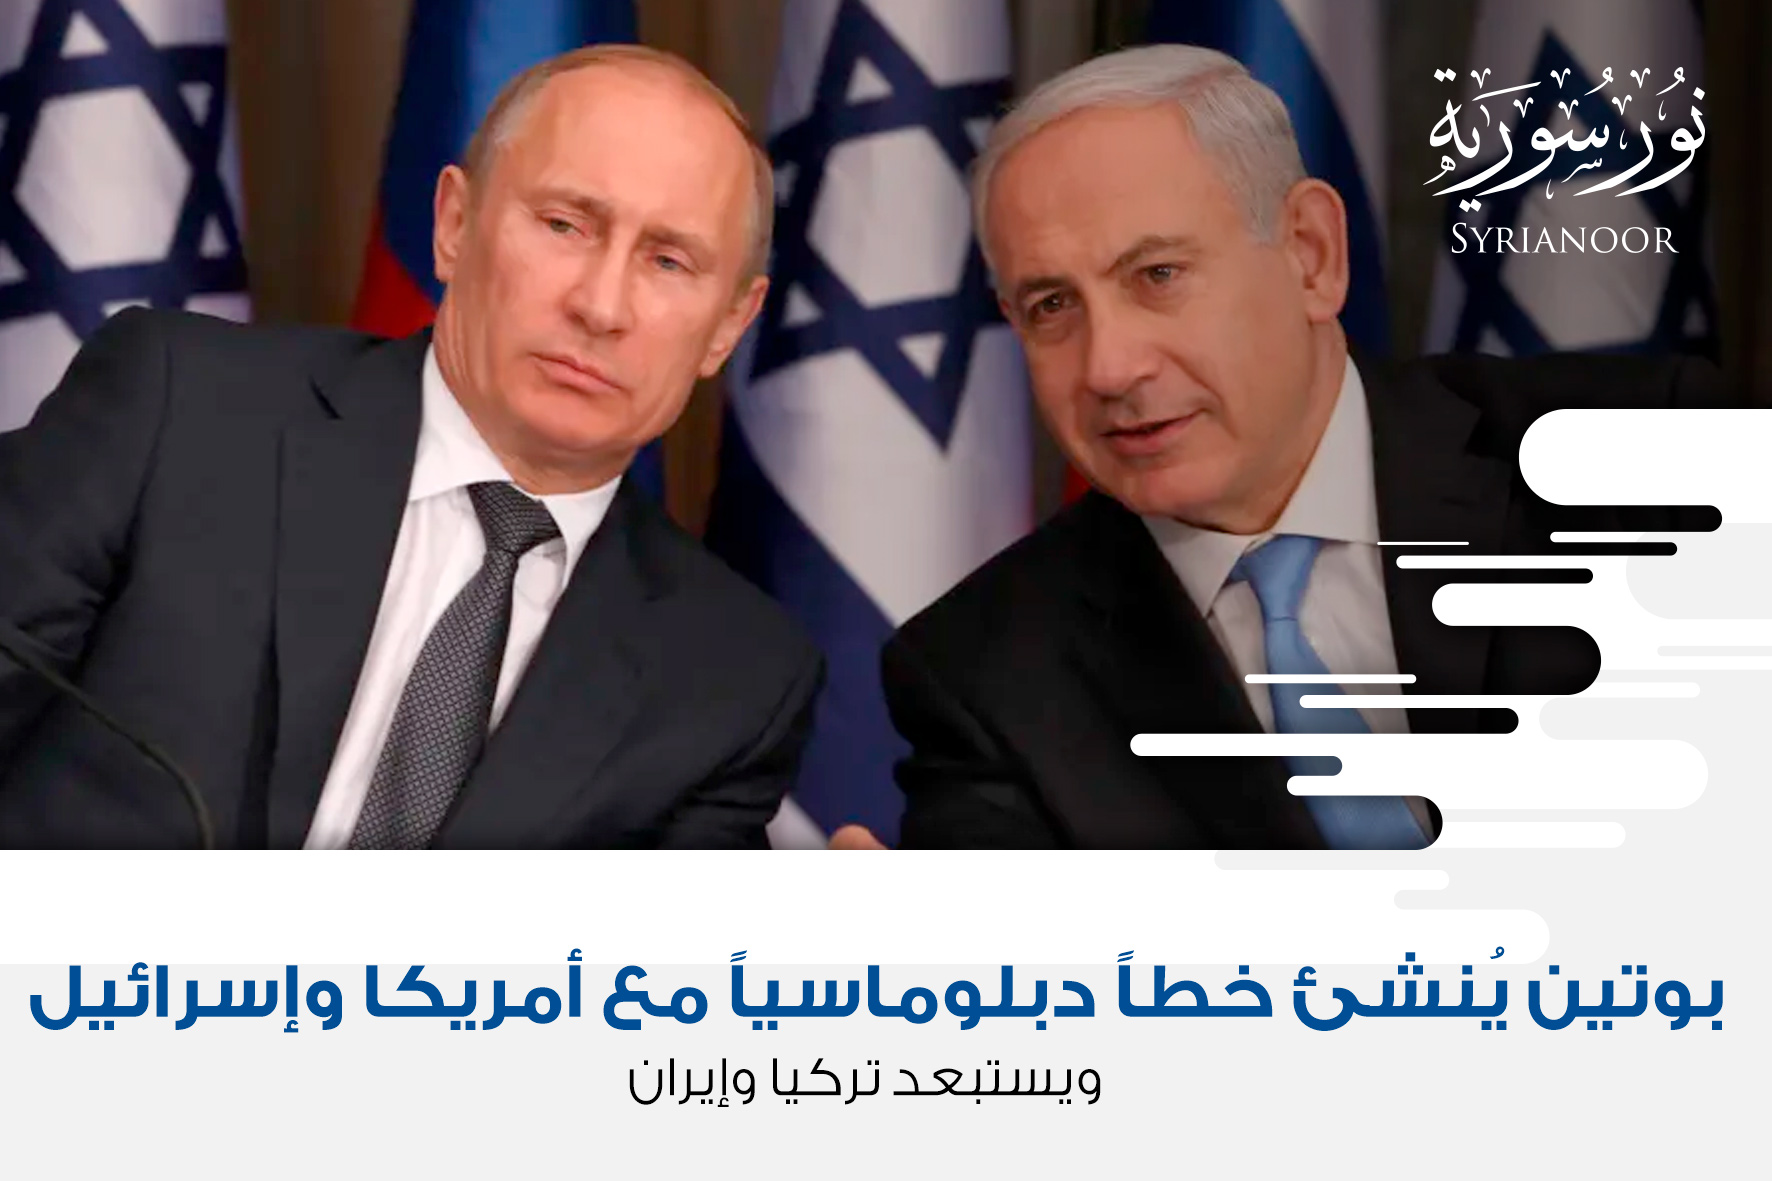 بوتين يُنشئ خطاً دبلوماسياً مع أمريكا وإسرائيل ويستبعد تركيا وإيران